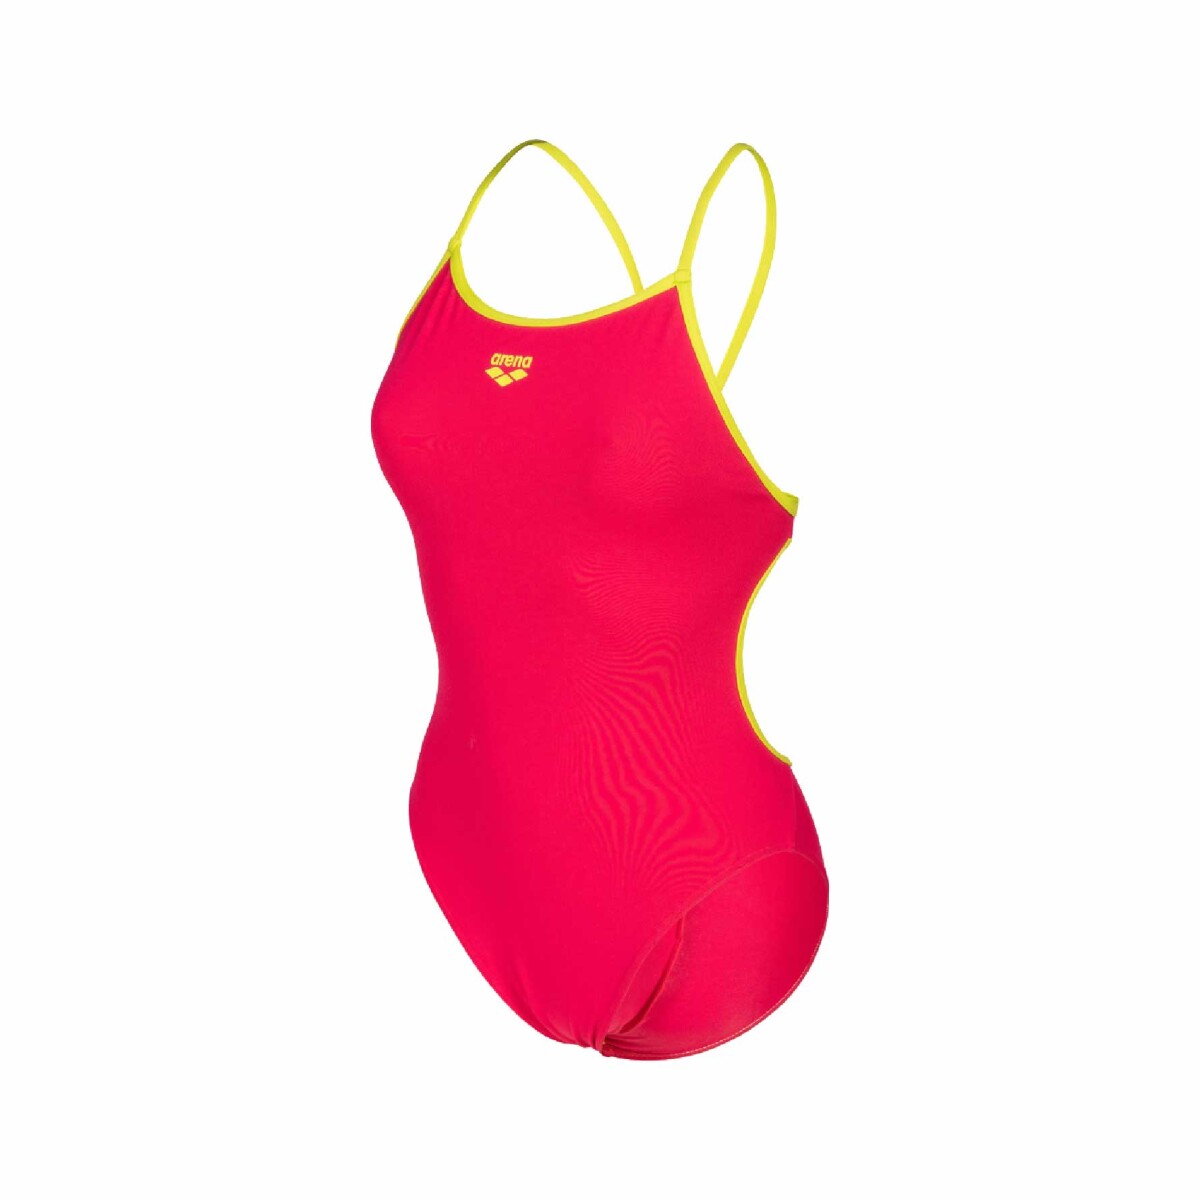 Malla De Entrenamiento Para Mujer Arena Women's Swimsuit Lace Back Solid - Rosa y Amarillo 